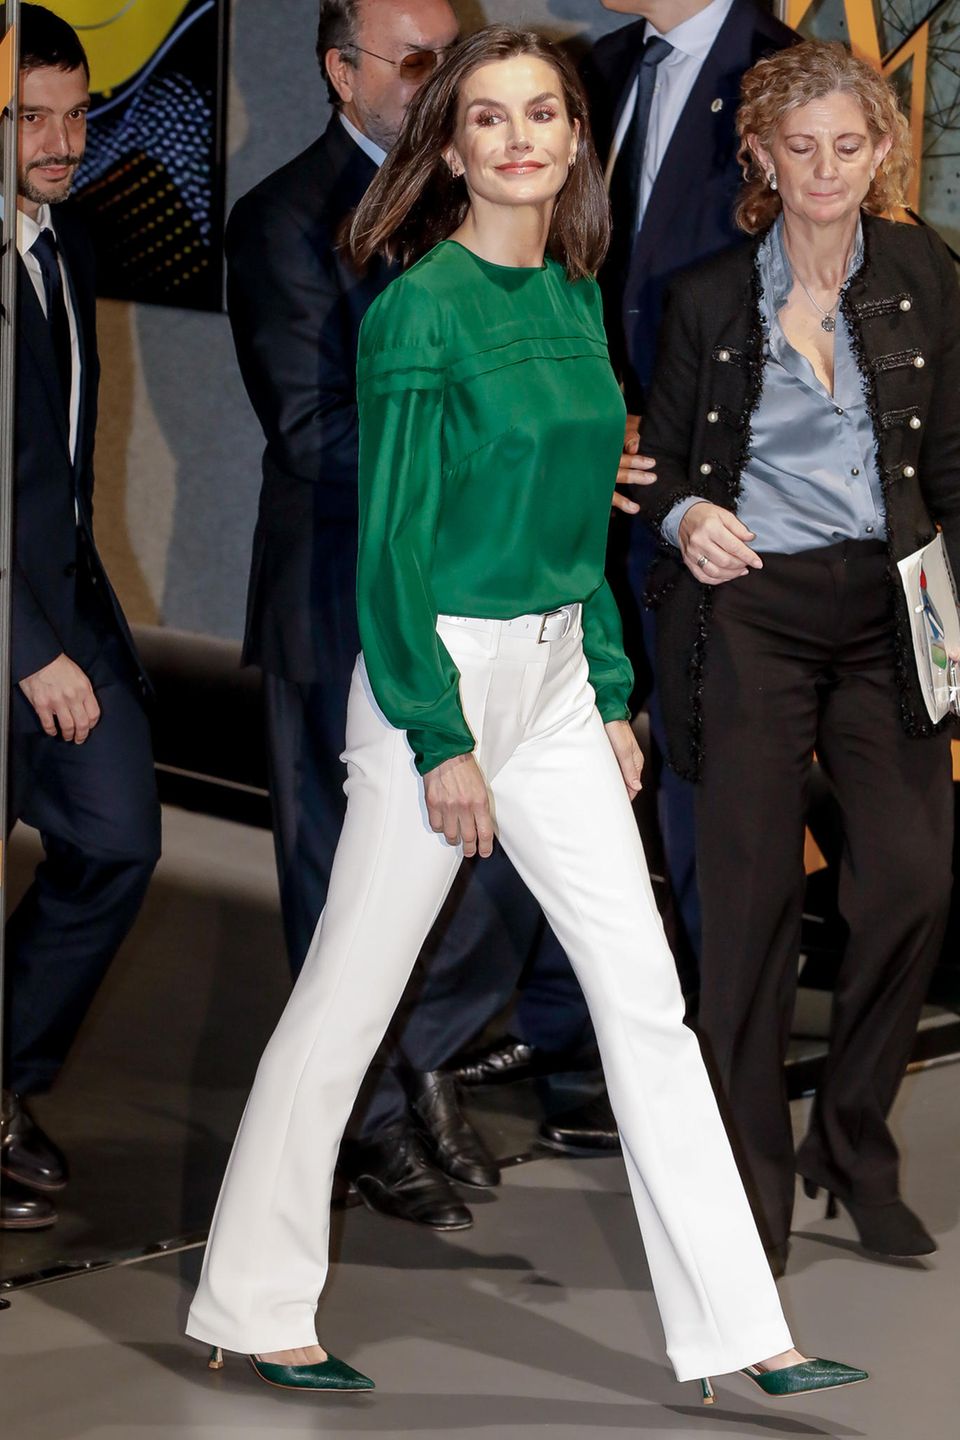 Mutig, mutig! Wenn es um weiße Hosen geht, gibt es ziemlich geteilte Meinungen. Entweder man liebt sie, oder man hasst sie. Wie elegant und vor allem modern die Wahl einer weißen Hose aussehen kann, zeigt Königin Letizia. Sie entscheidet sich für ein Modell mit Schlag und kombiniert dazu eine grüne Bluse, die die Farbe direkt noch mehr zum Strahlen bringt.